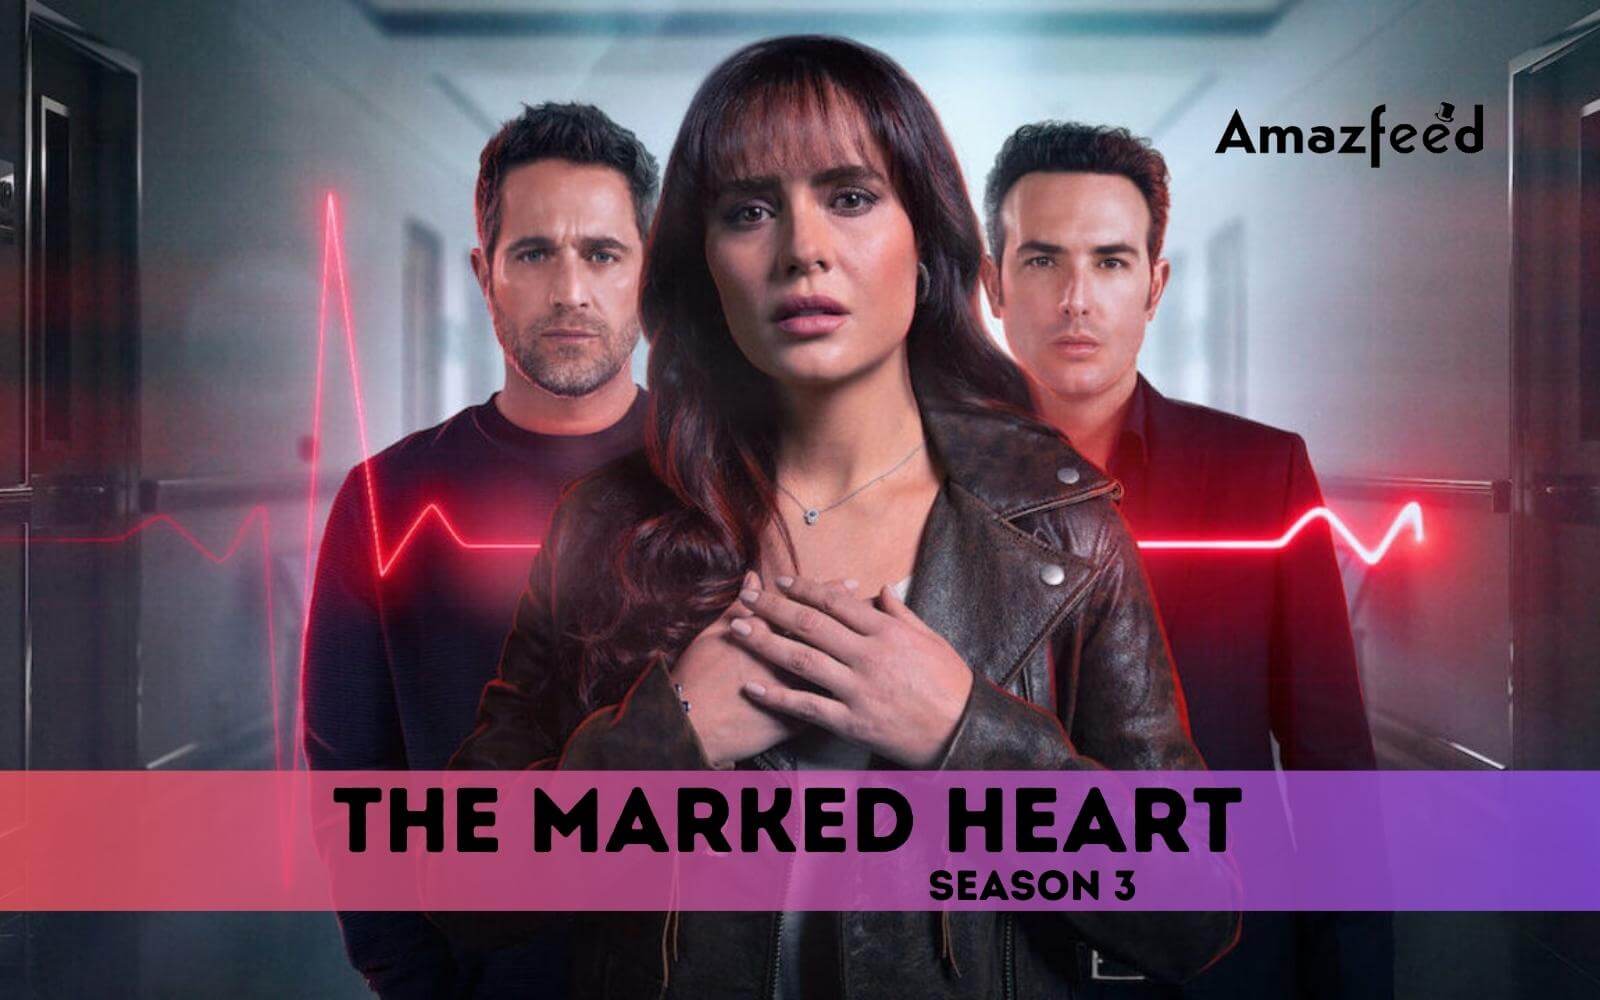 The Marked Heart Season 3